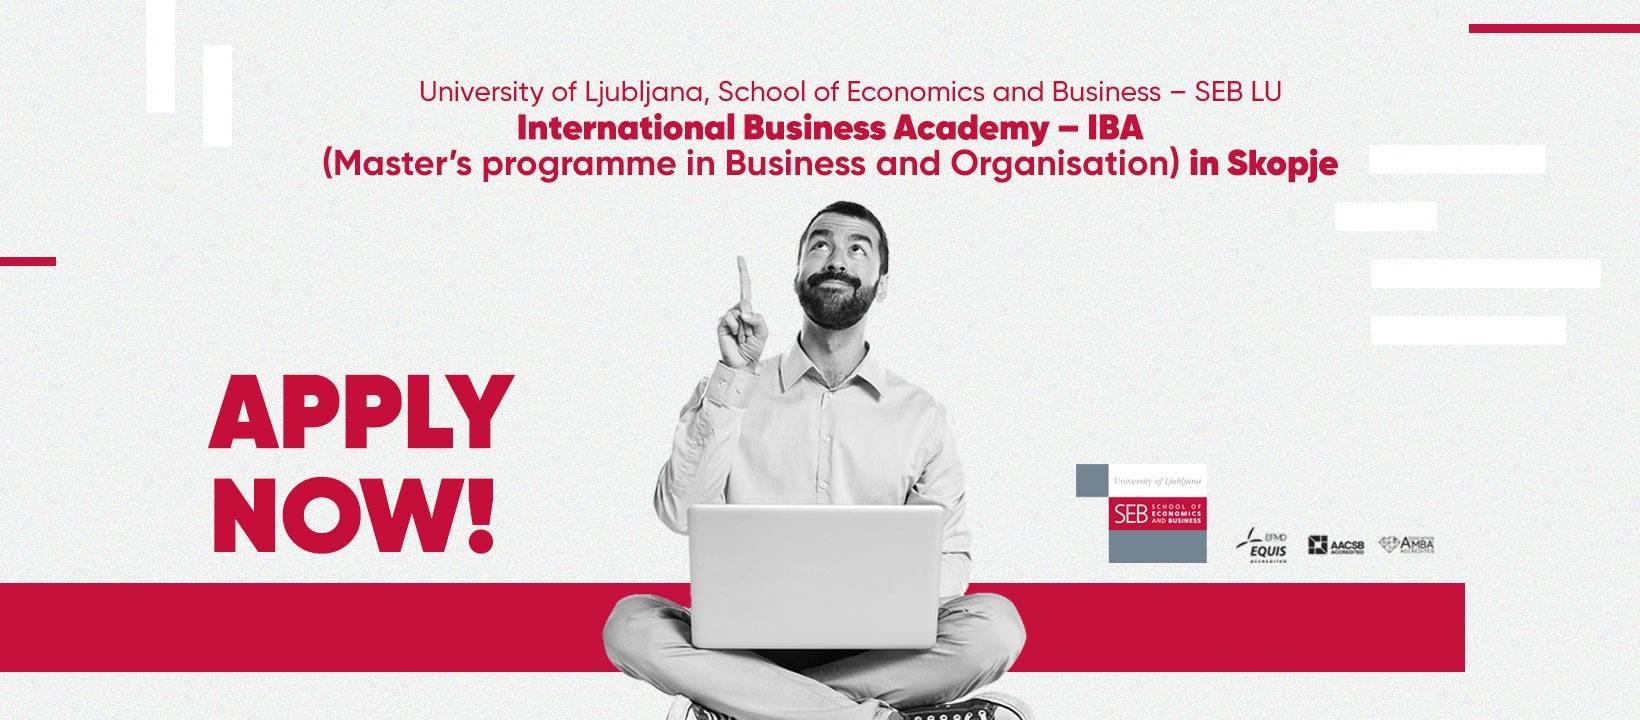  10 razloga zašto je međunarodni master program na Ekonomskom fakultetu - Ljubljana, najbolji mogući izbor! 